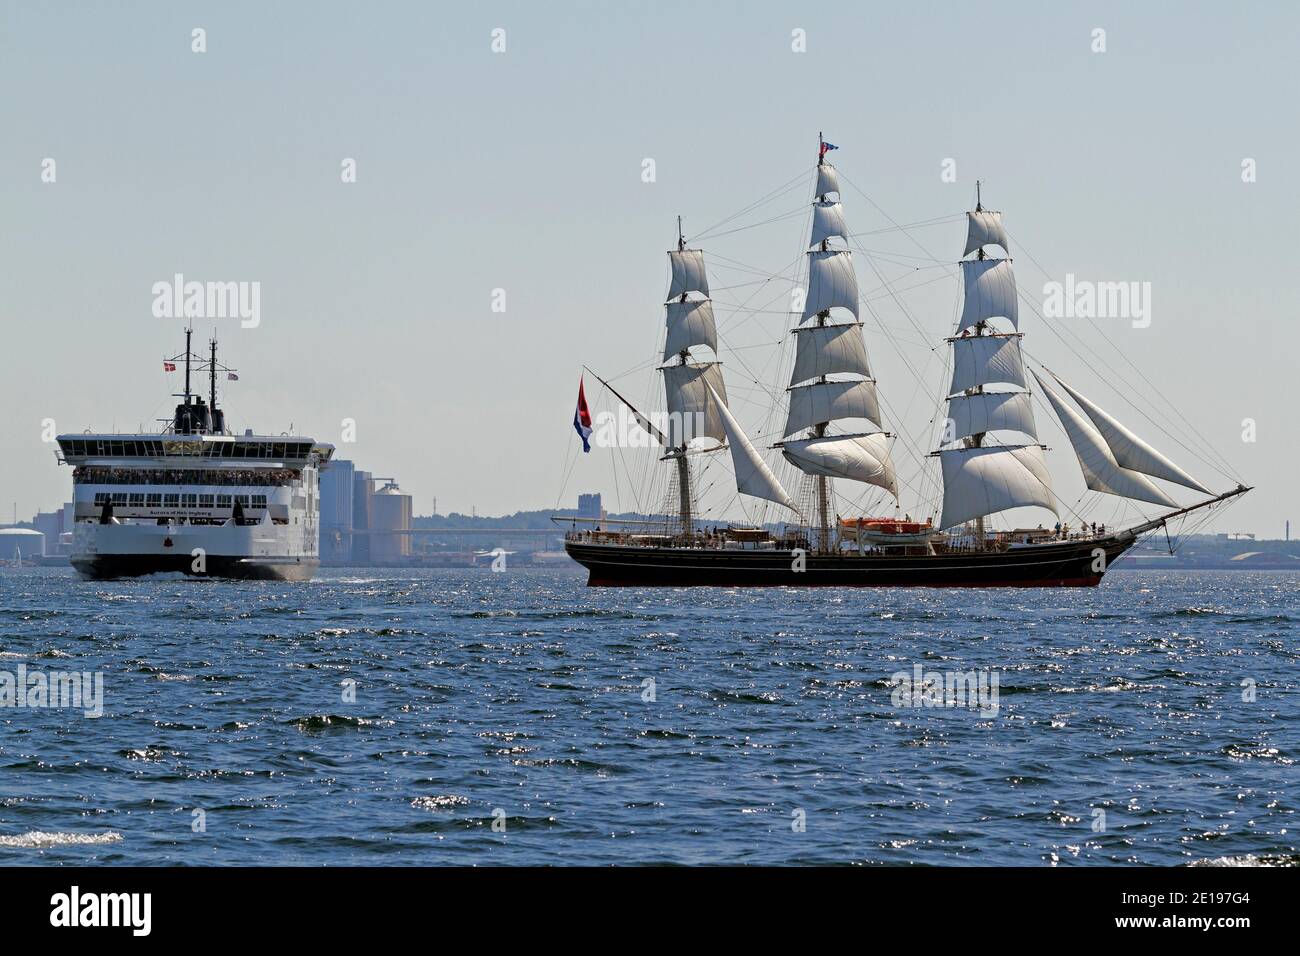 El barco de vela Stad Amsterdam, un cortapelos holandés de tres mástiles en Kronborg y un ferry Scandlines en el Sound entre Dinamarca y Suecia. Foto de stock